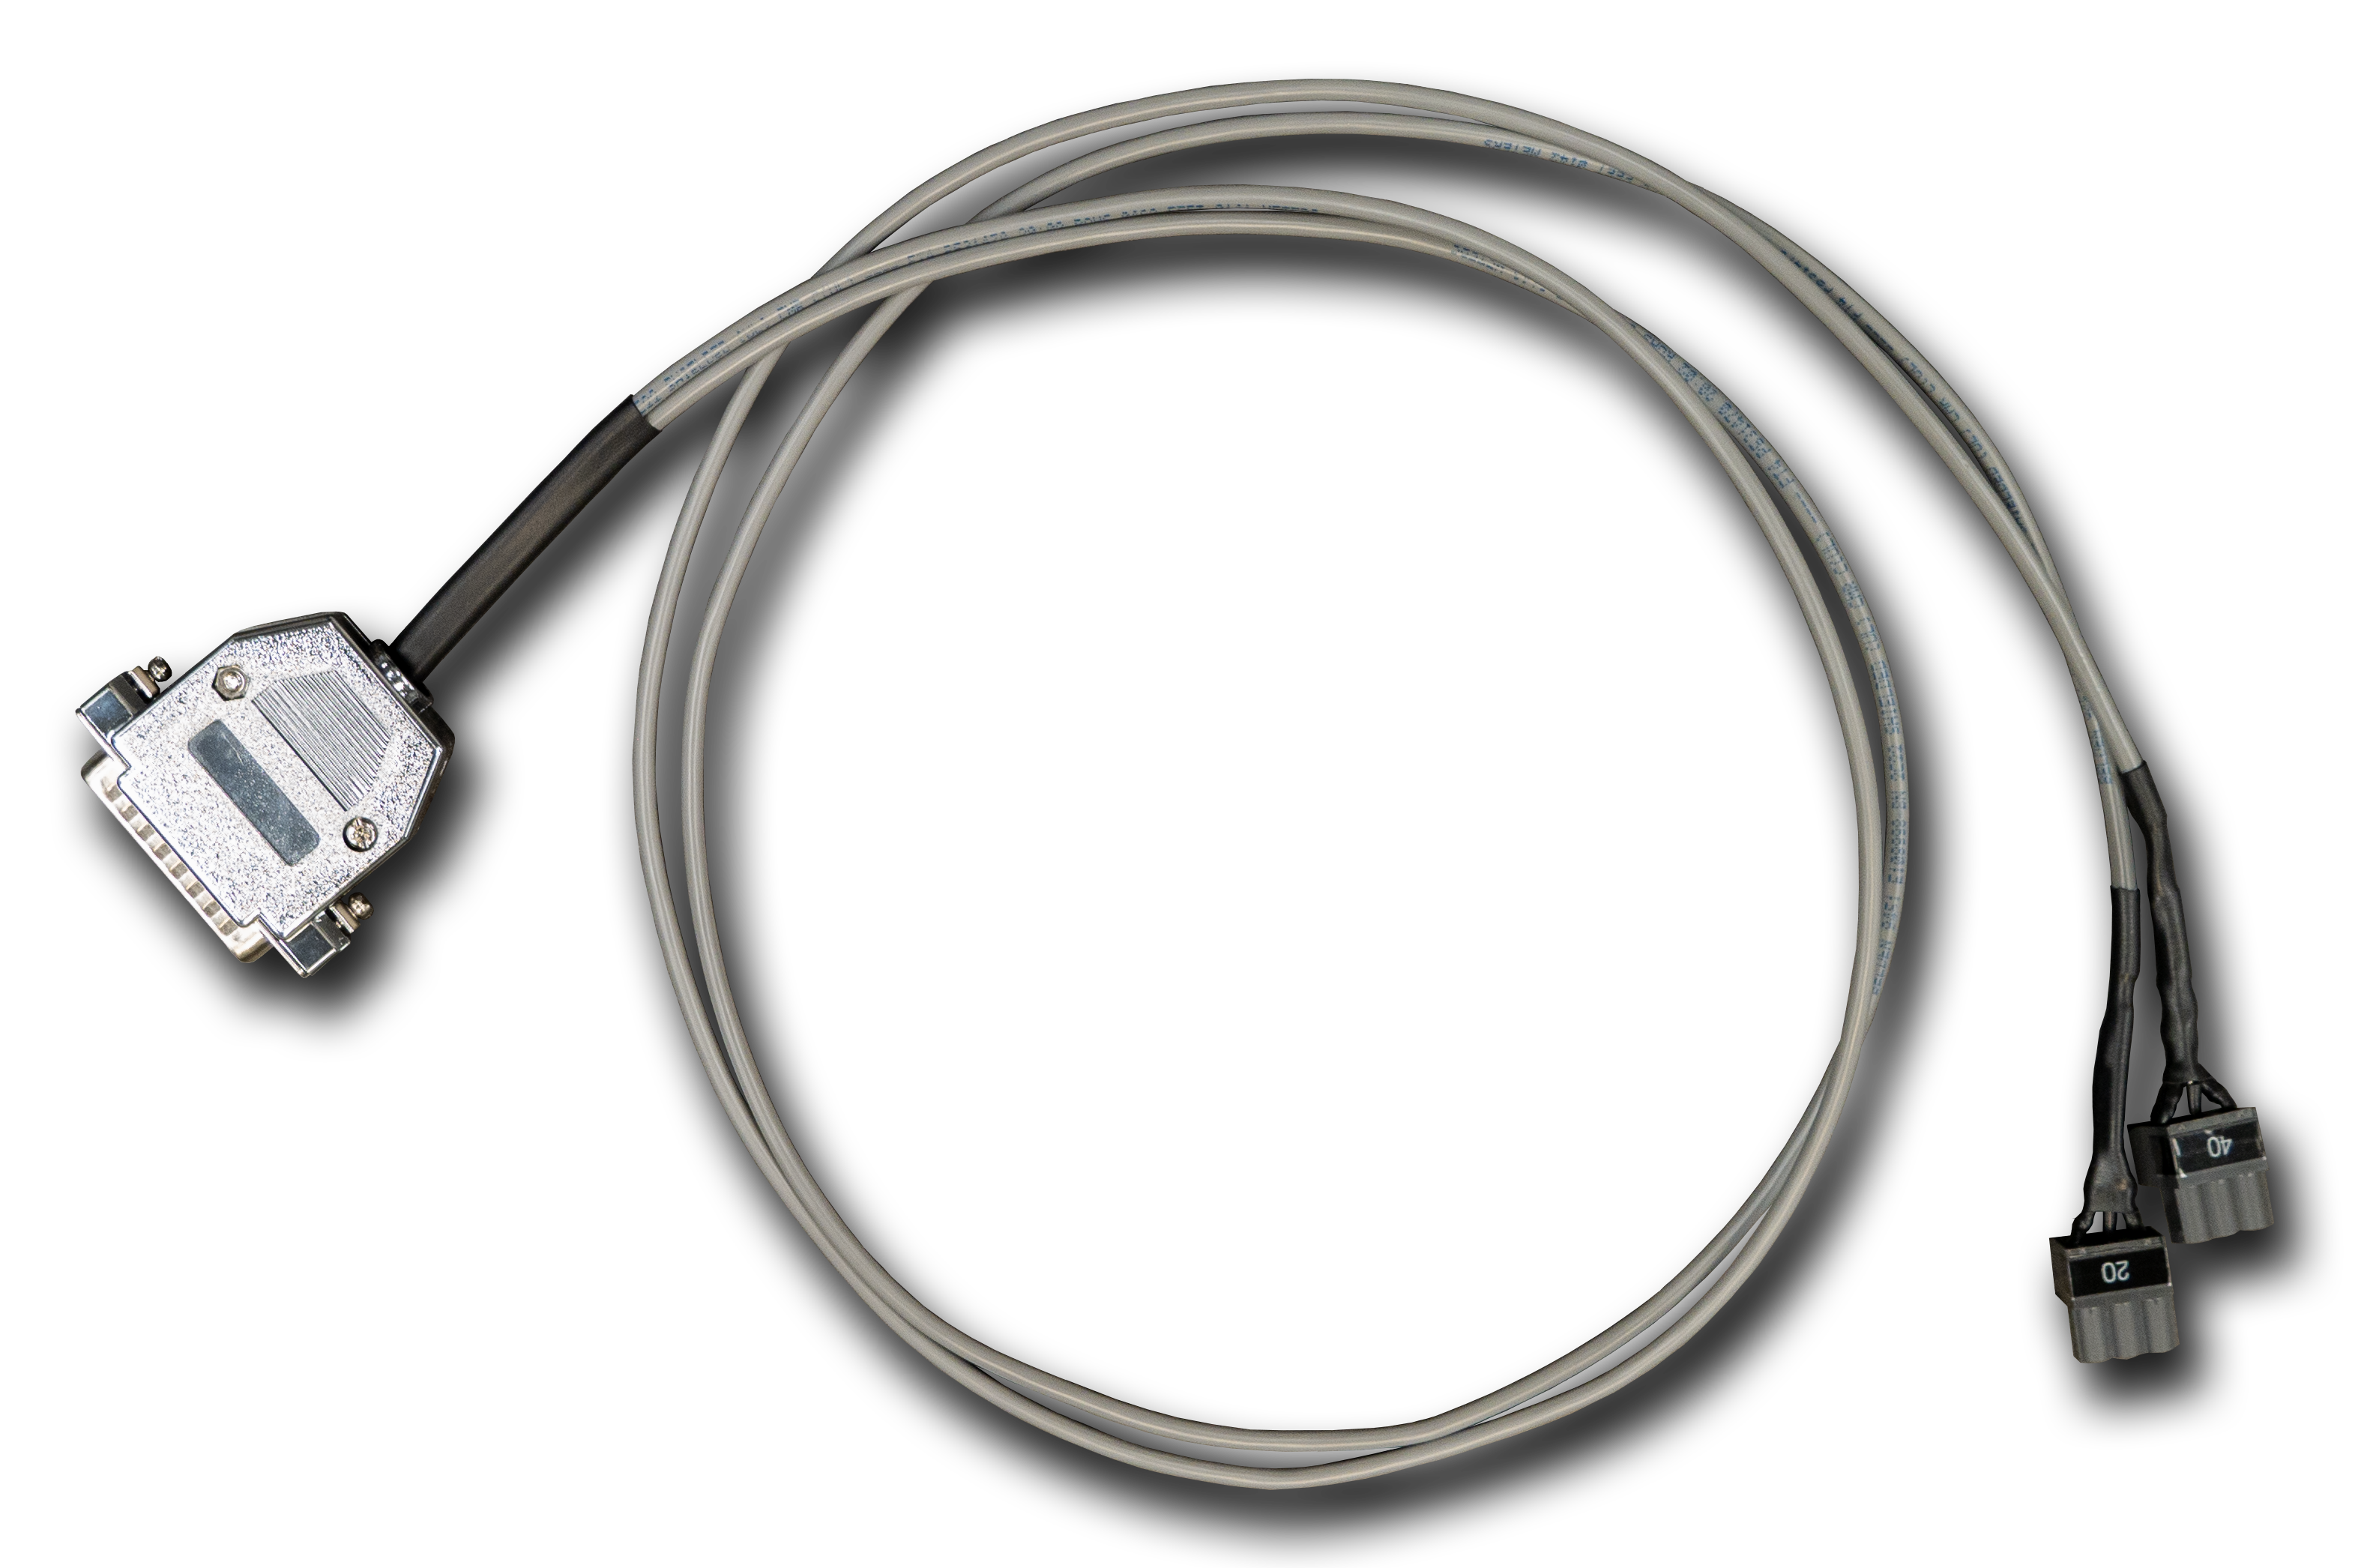 ESO-20 & ESO-40 cable